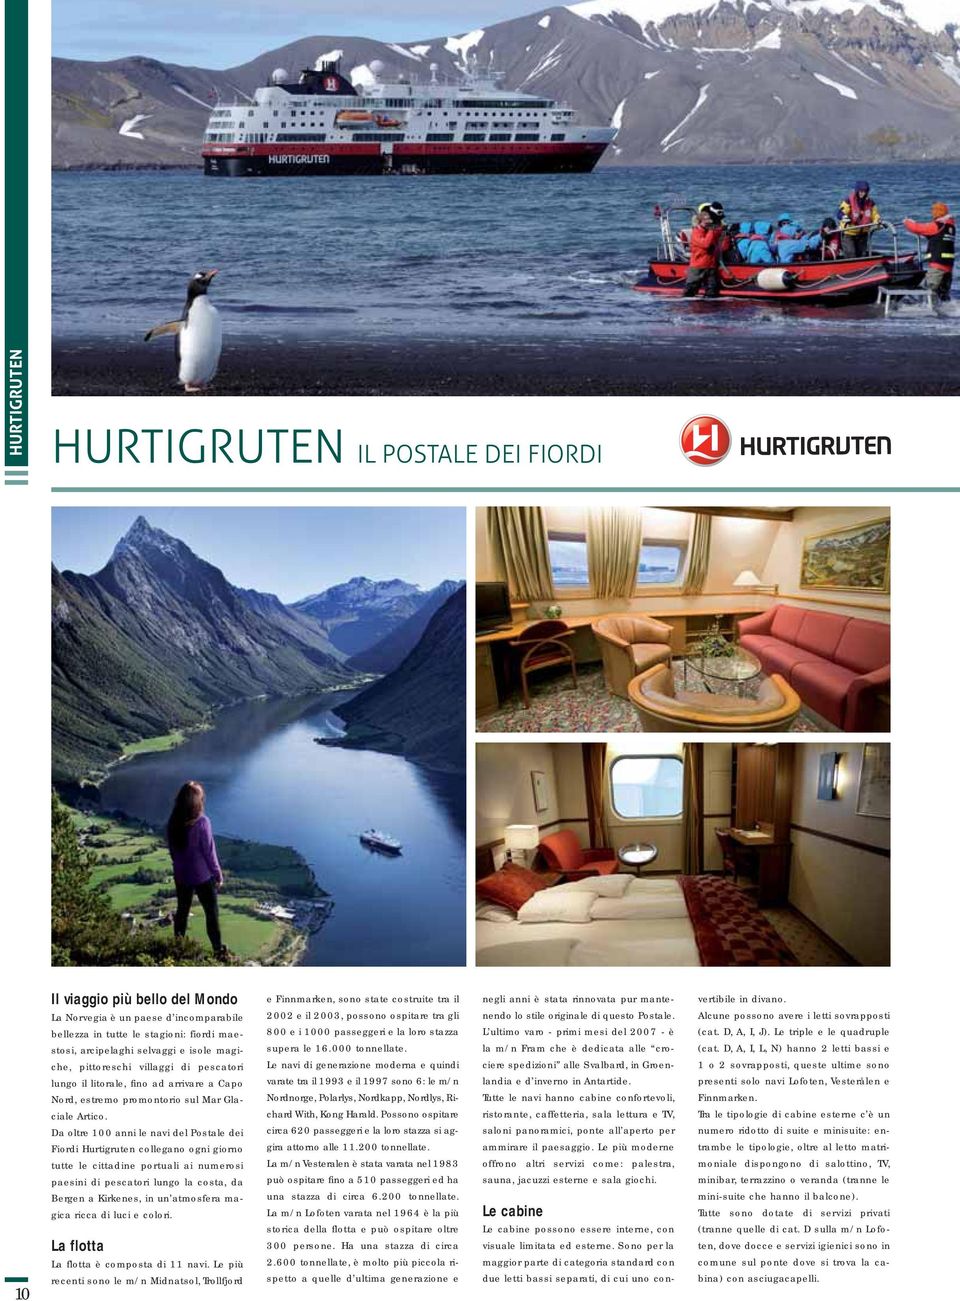 Da oltre 100 anni le navi del Postale dei Fiordi Hurtigruten collegano ogni giorno tutte le cittadine portuali ai numerosi paesini di pescatori lungo la costa, da Bergen a Kirkenes, in un atmosfera